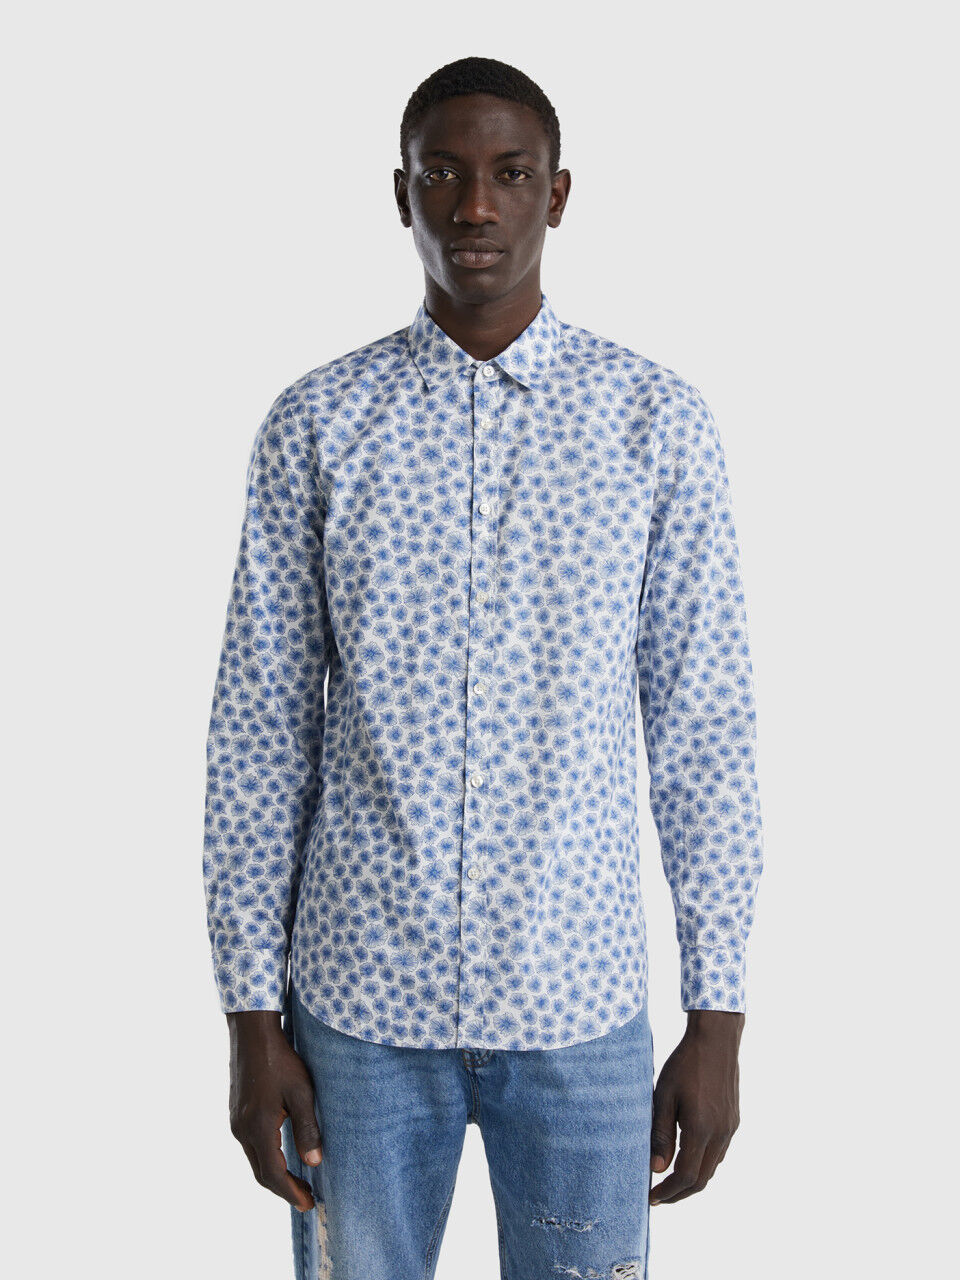 Toegepast Hallo tijdelijk Men's Shirts New Collection 2023 | Benetton